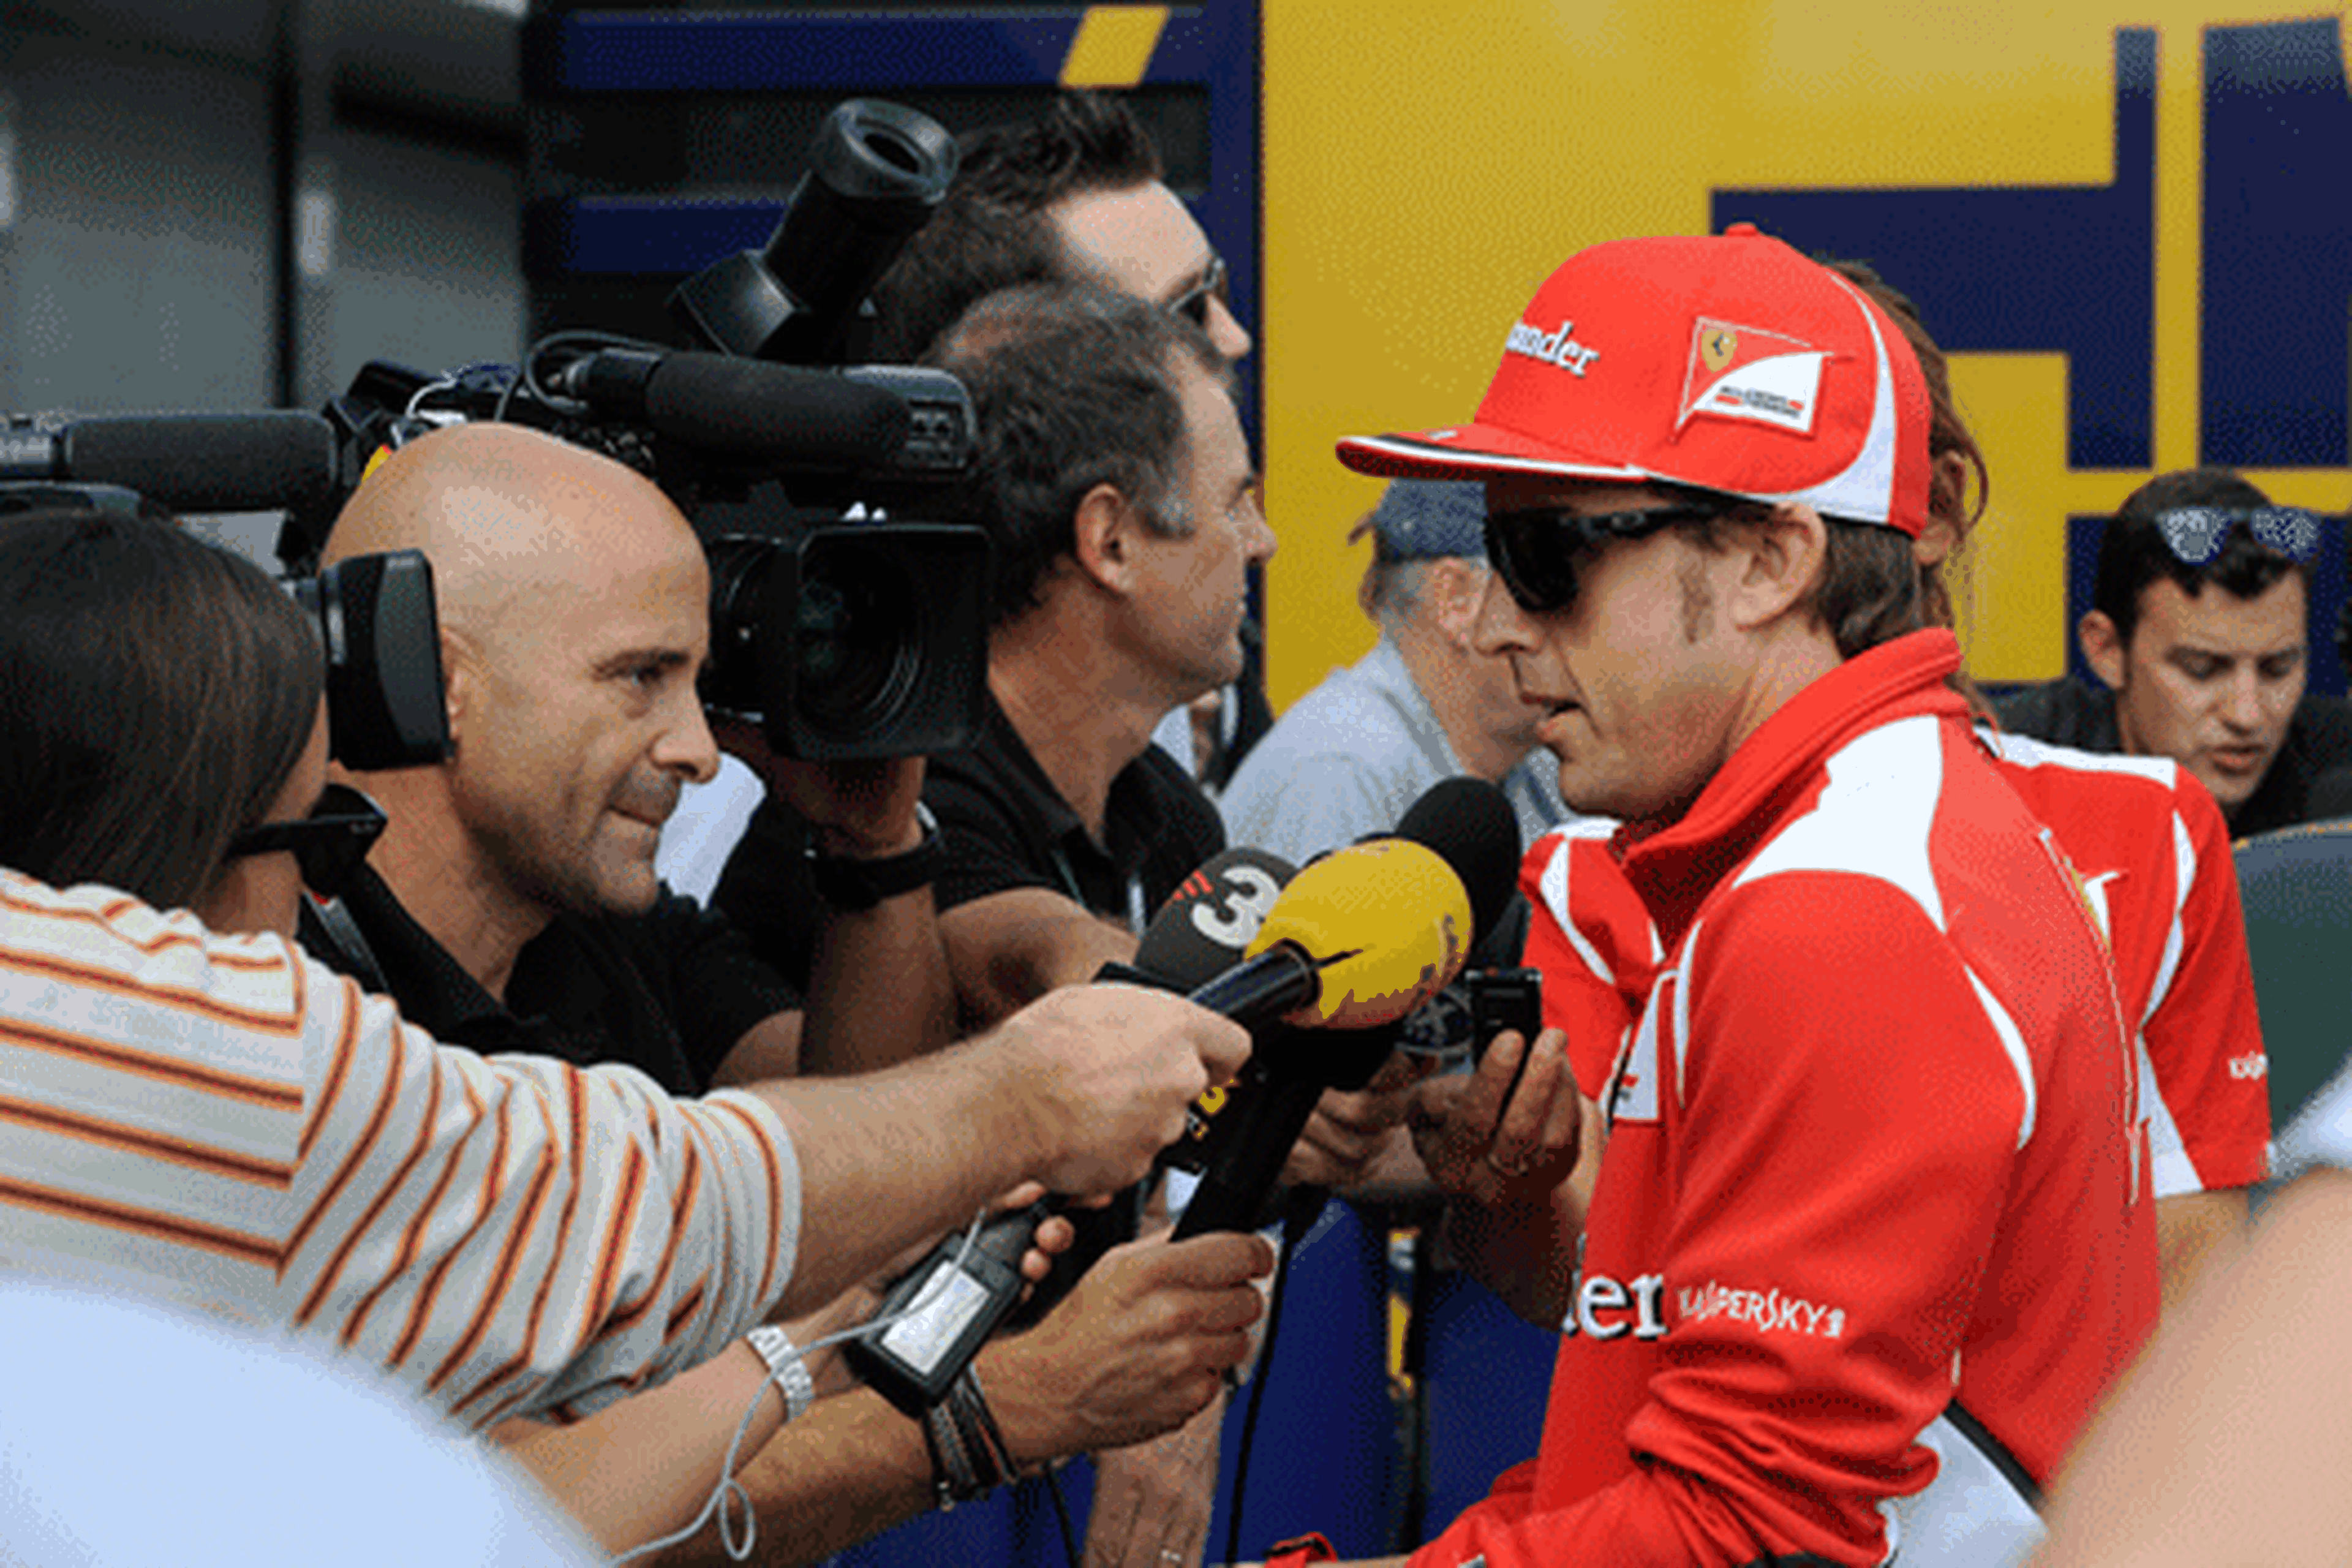 Antonio Lobato podría dejar la Fórmula 1 en 2015